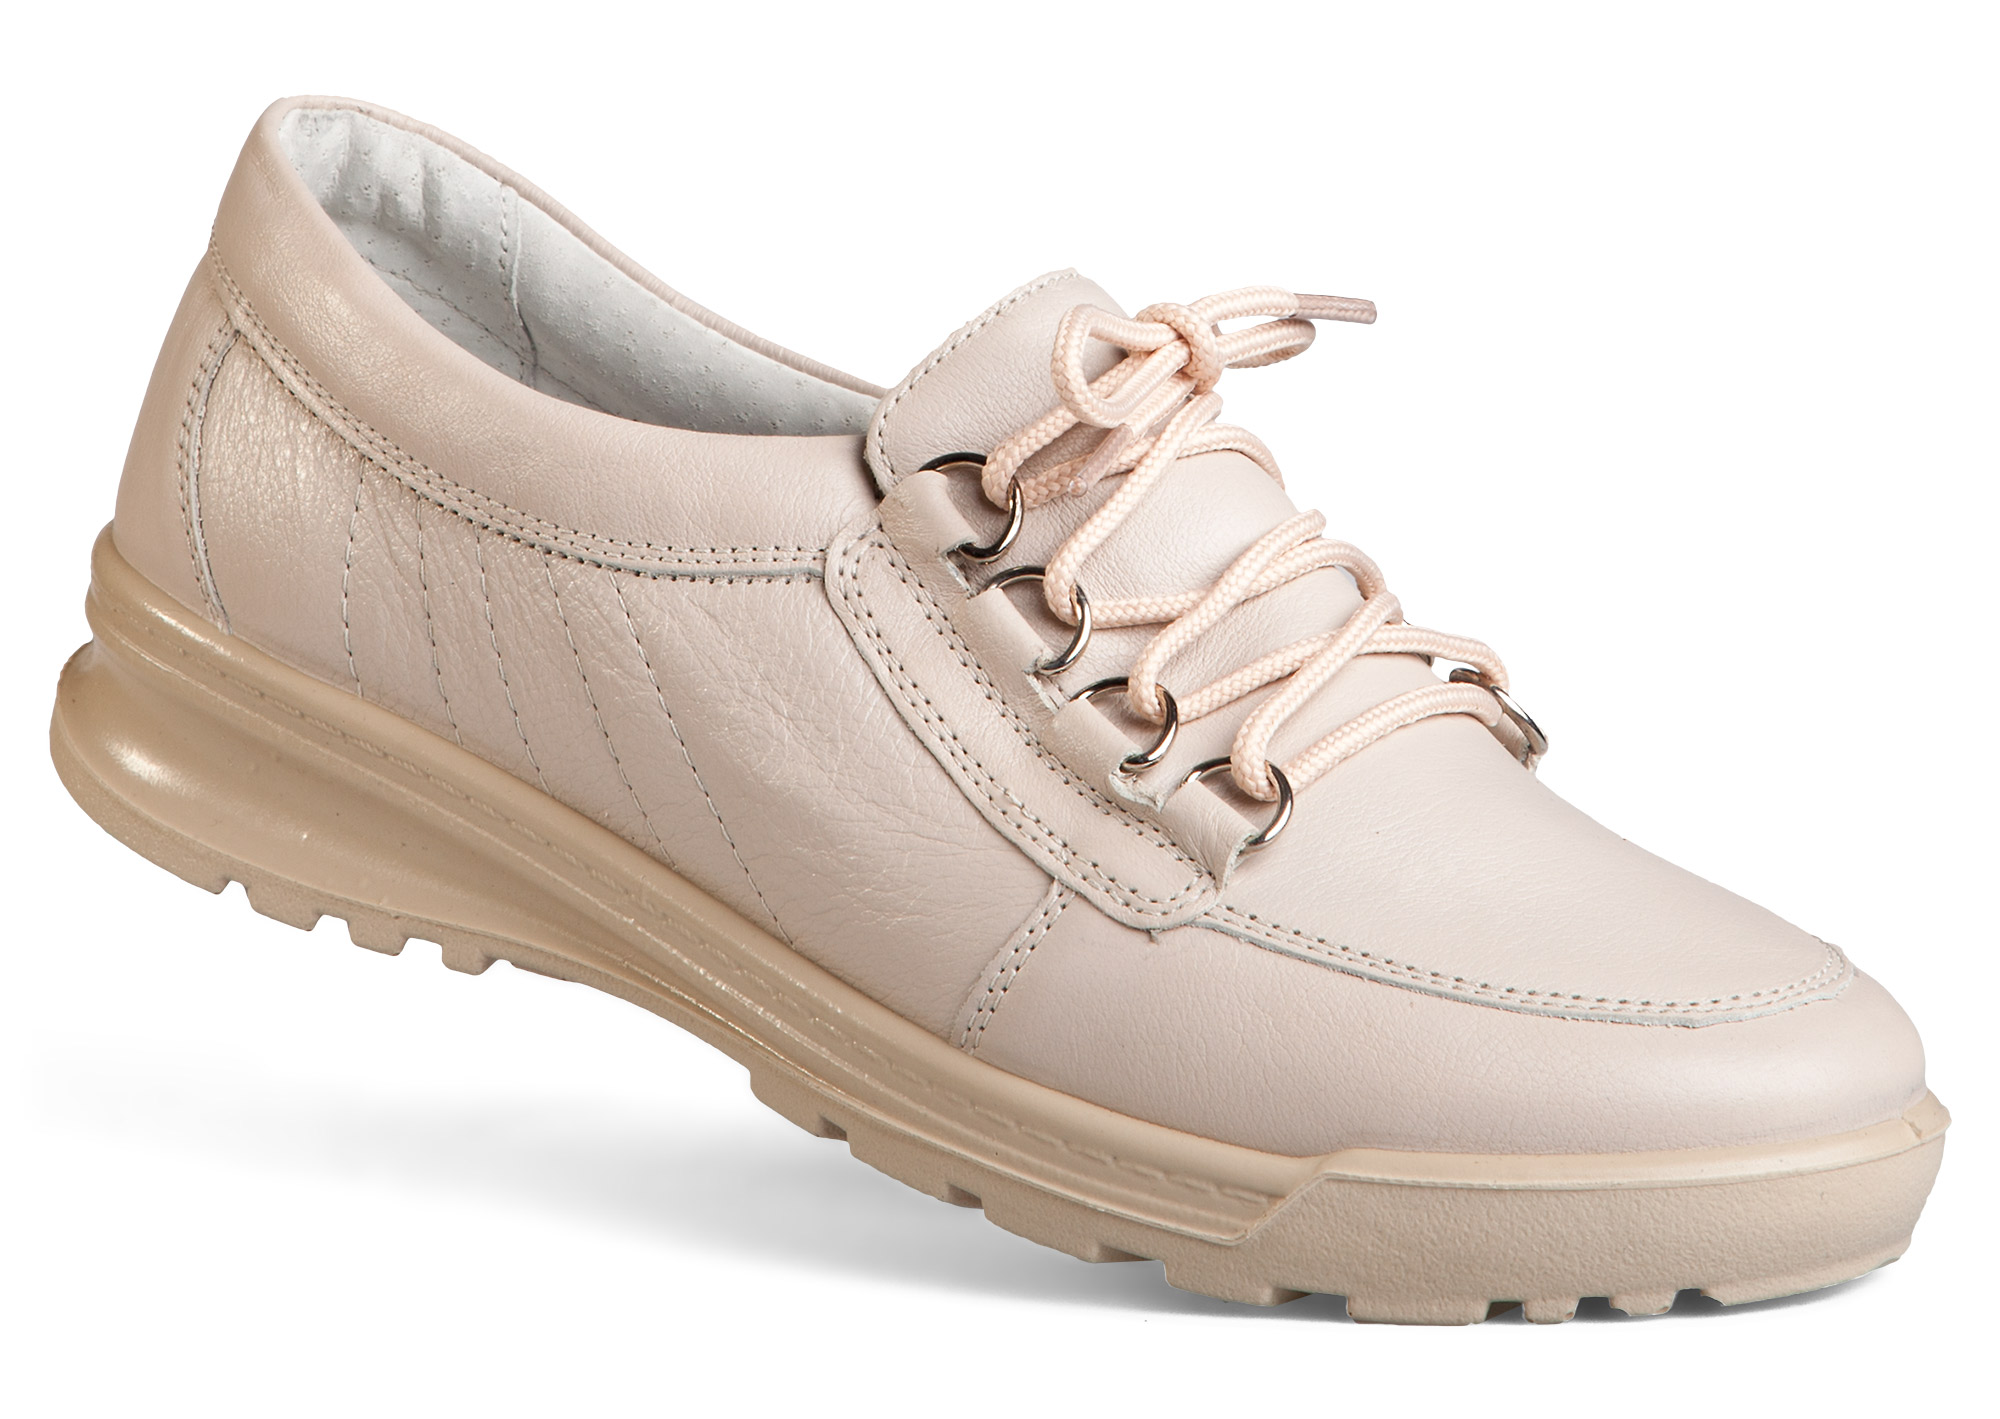 Обувь интернет магазин самара. Полуботинки на шнурках женские беж балдинини. Полуботинки тофф леди Спарта.